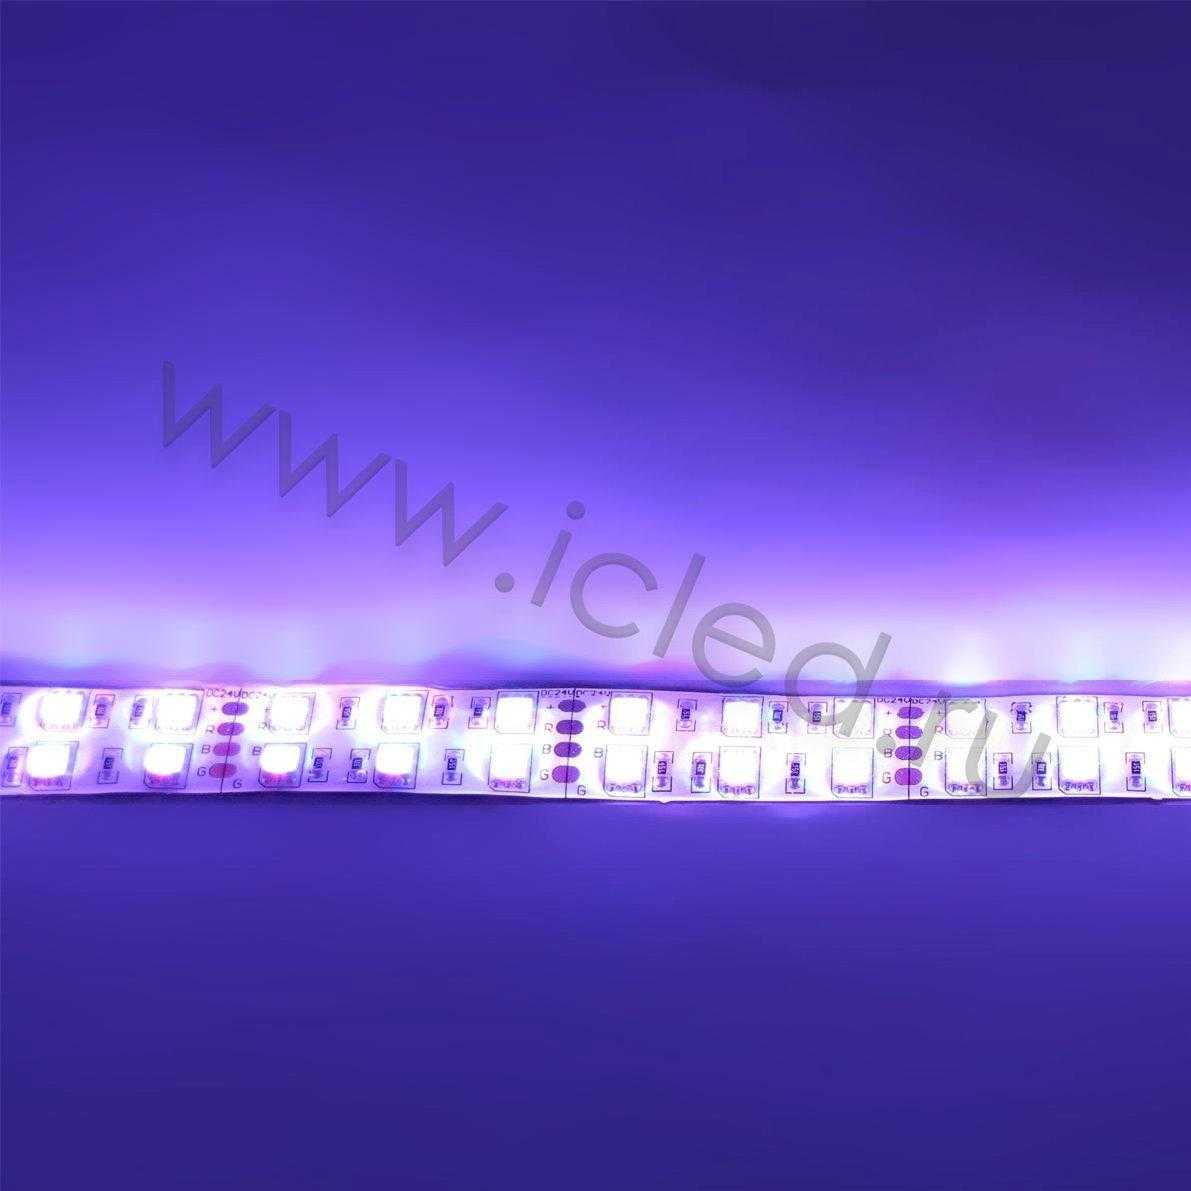 Влагозащищенные светодиодные ленты Светодиодная лента Standart PRO class, 5050, 120 led/m, RGB, 24V, IP65 Icled